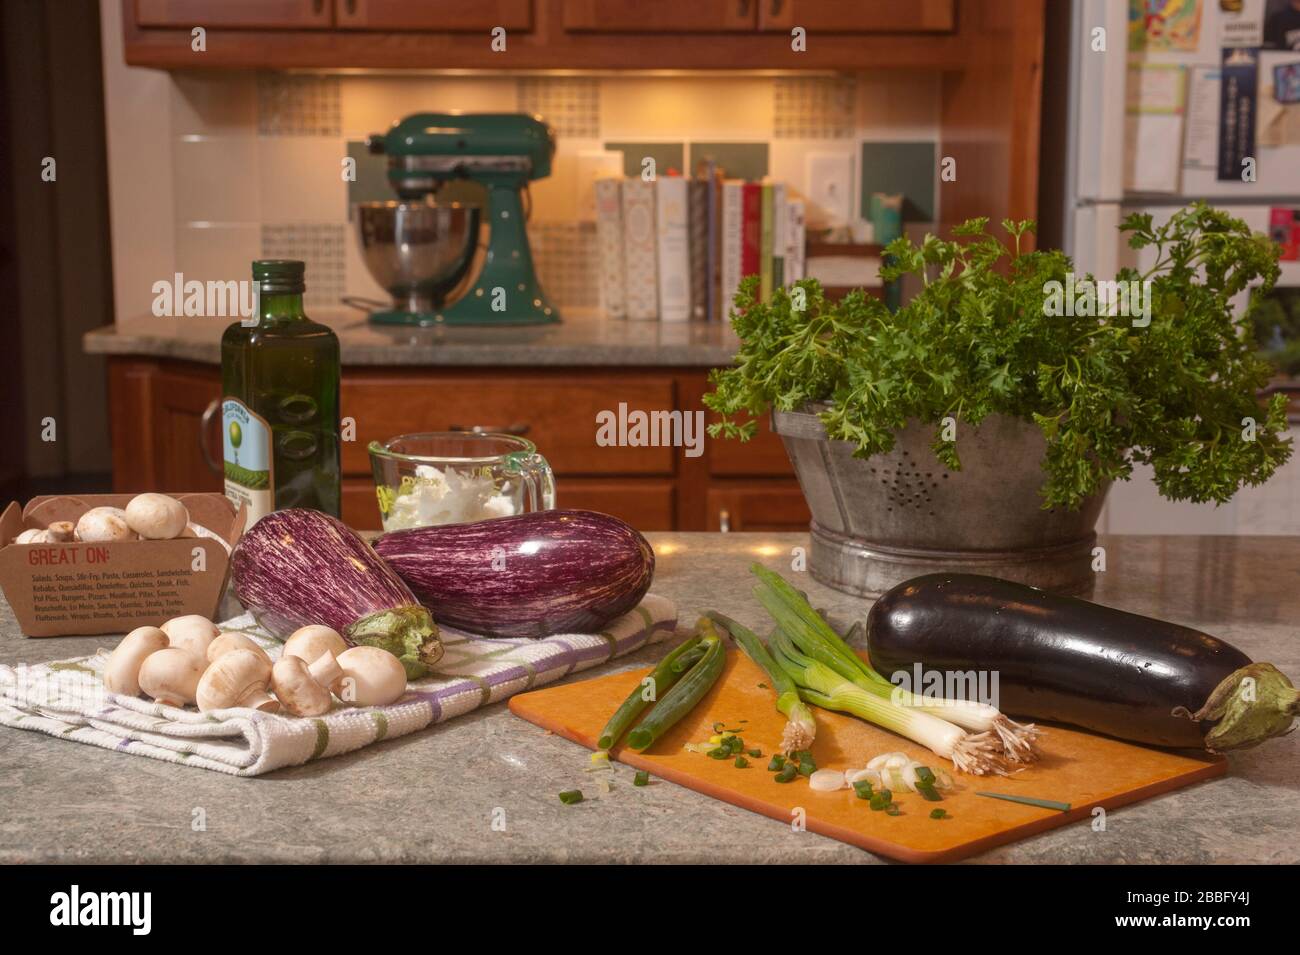 Melanzane, funghi, scalogni, olio e spazi sul bancone della cucina. Preparazione alimentare per preparare il baba ganoush. Foto Stock